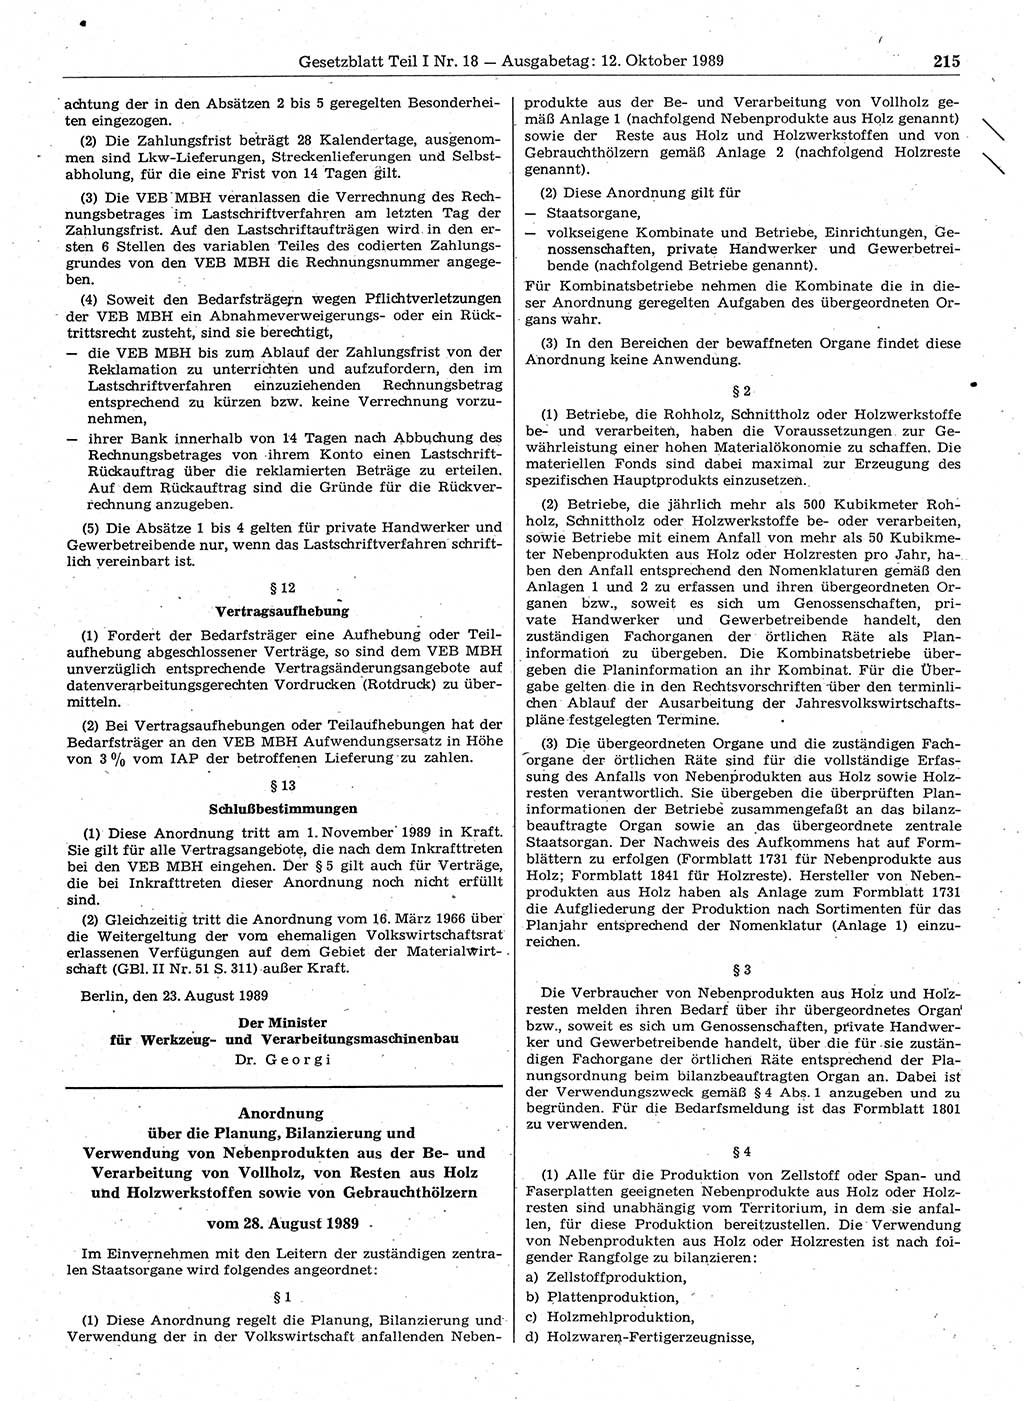 Gesetzblatt (GBl.) der Deutschen Demokratischen Republik (DDR) Teil Ⅰ 1989, Seite 215 (GBl. DDR Ⅰ 1989, S. 215)